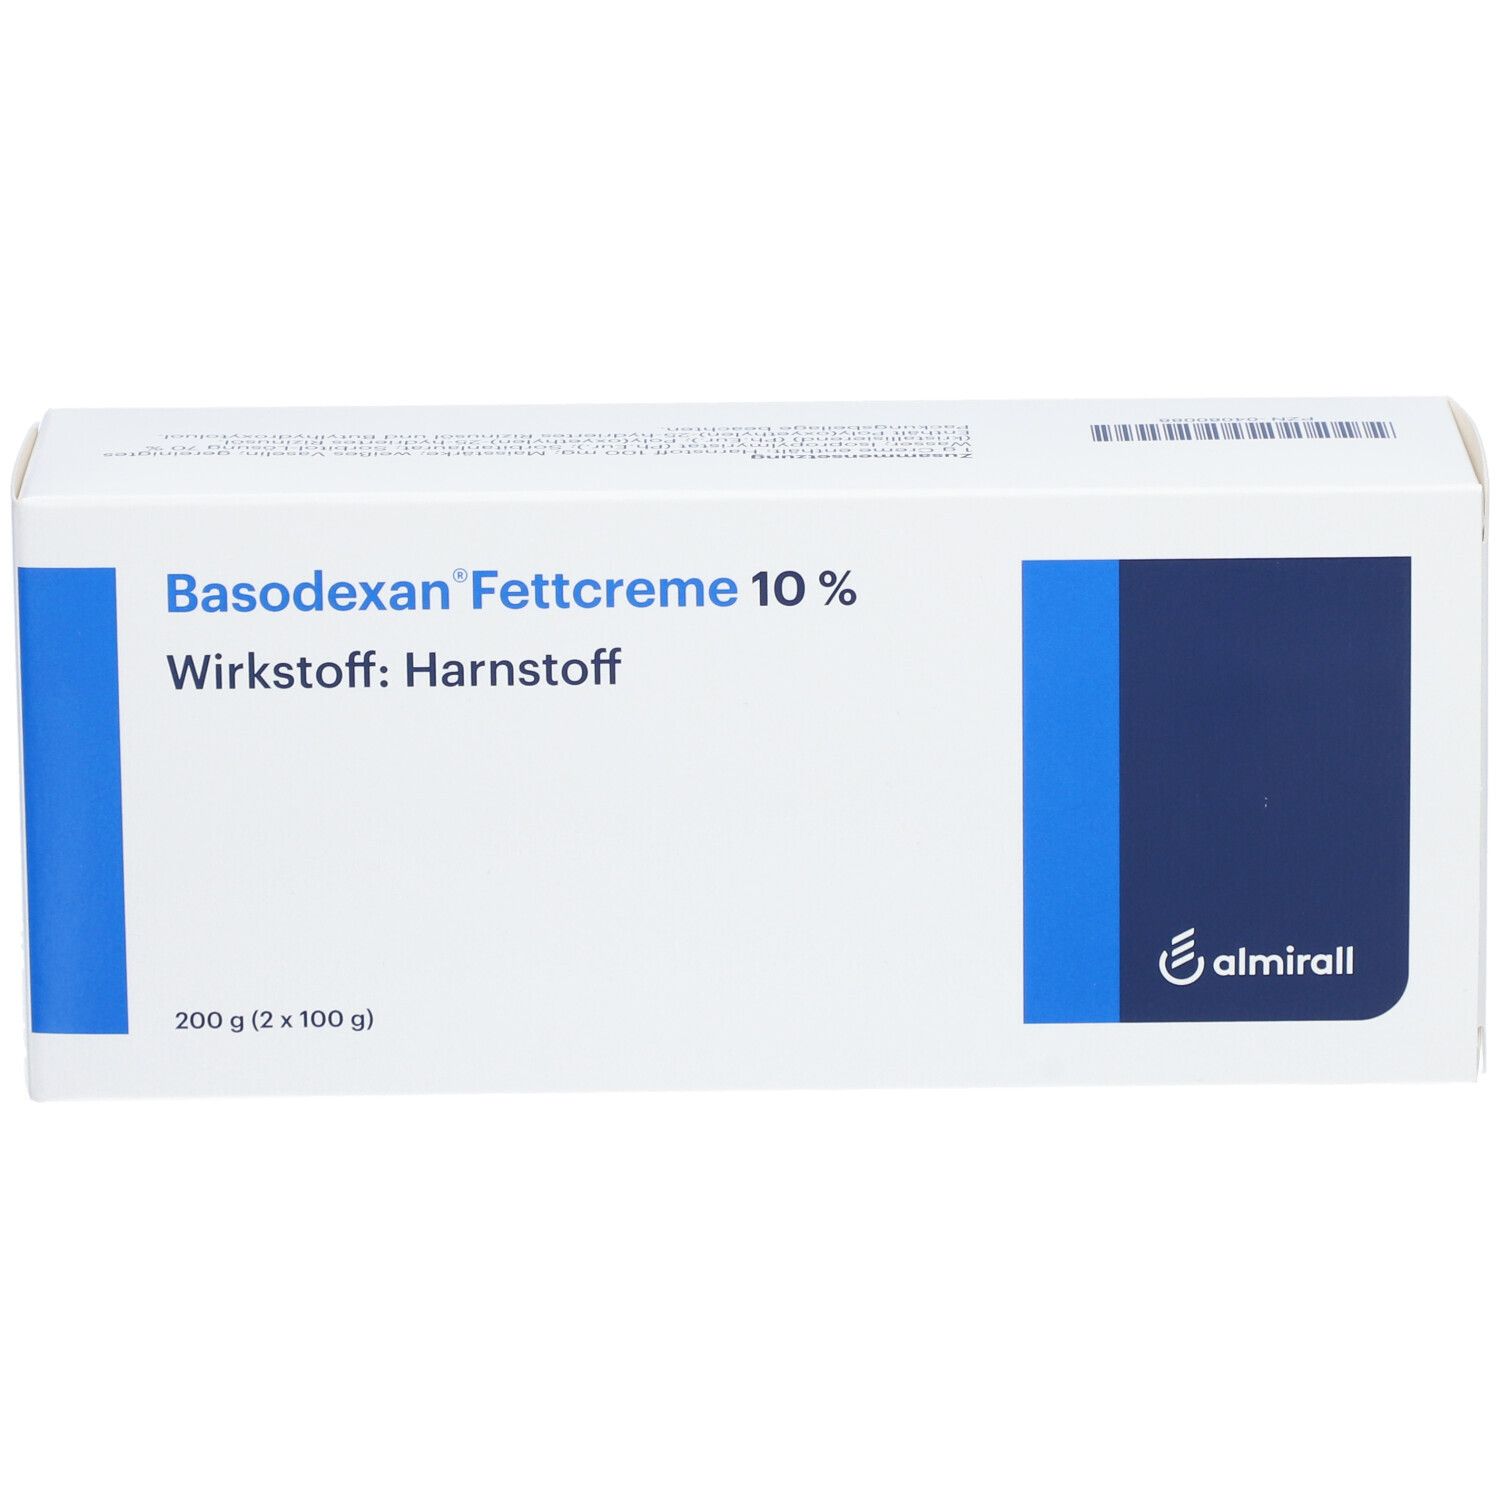 Basodexan® Fettcreme 10 %